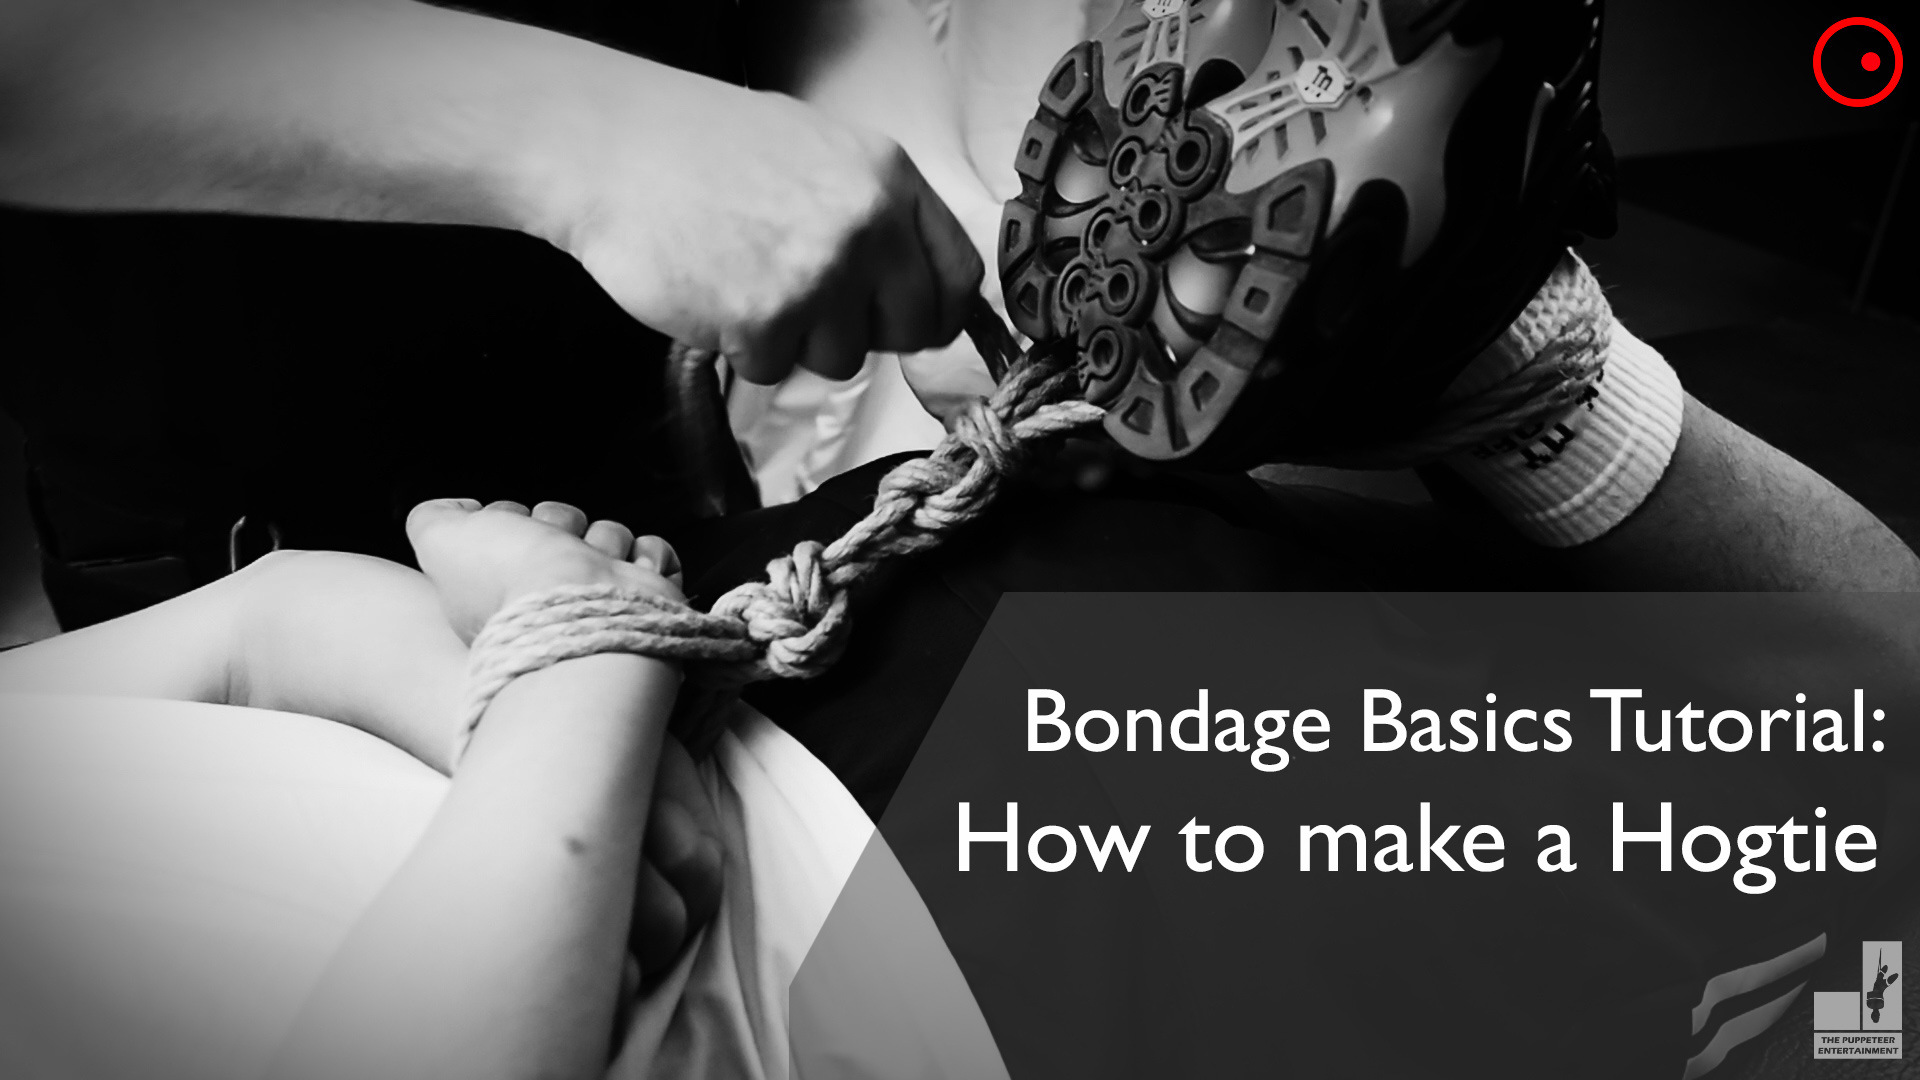 Bondage Basics Tutorial 03: The Hogtie